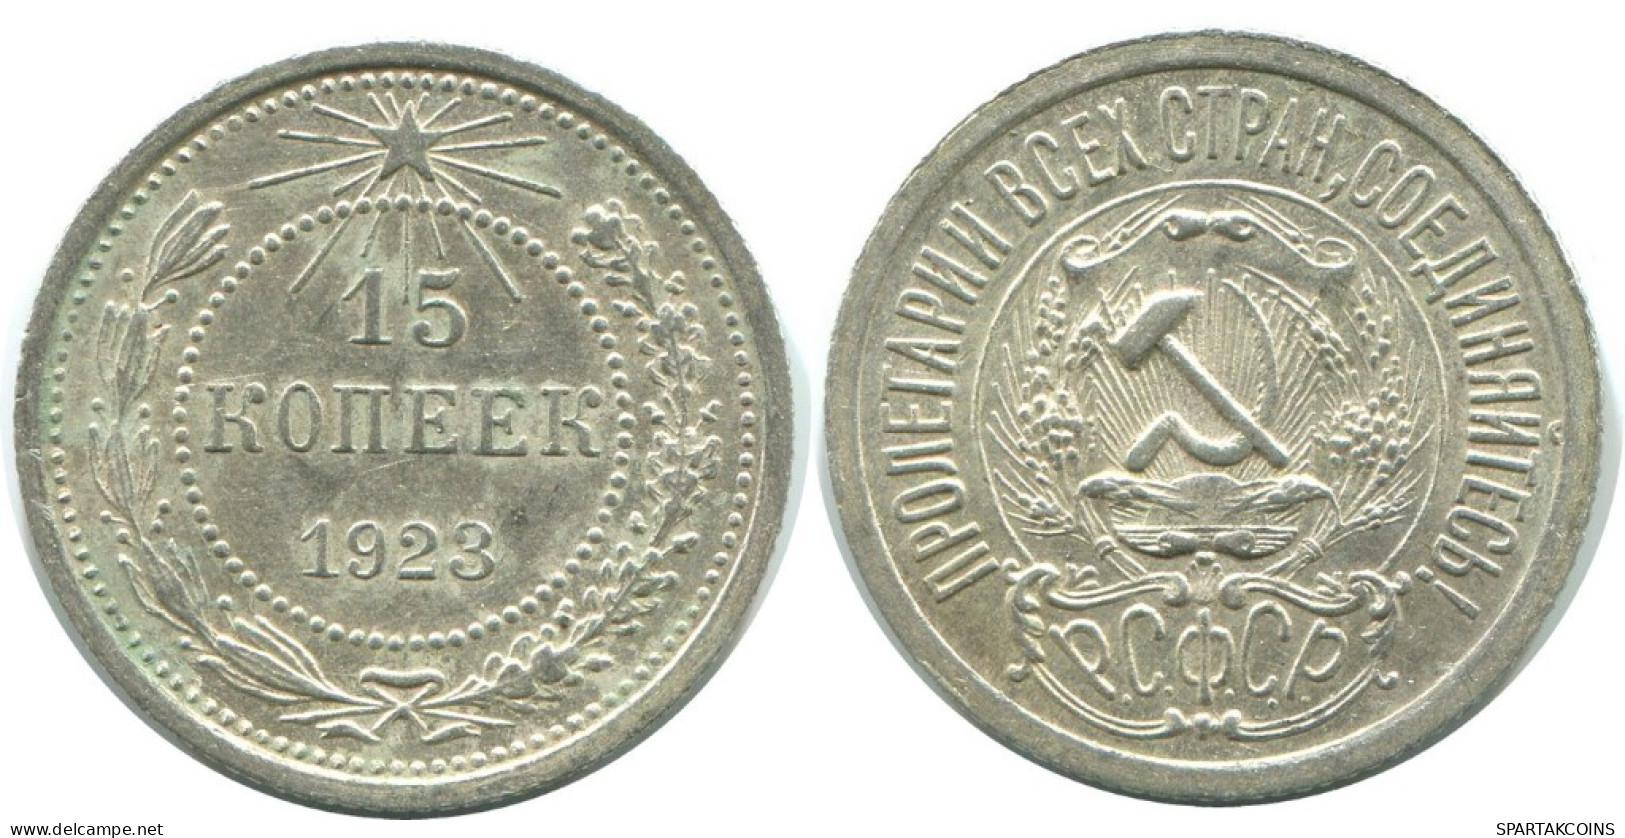 15 KOPEKS 1923 RUSIA RUSSIA RSFSR PLATA Moneda HIGH GRADE #AF121.4.E.A - Russland